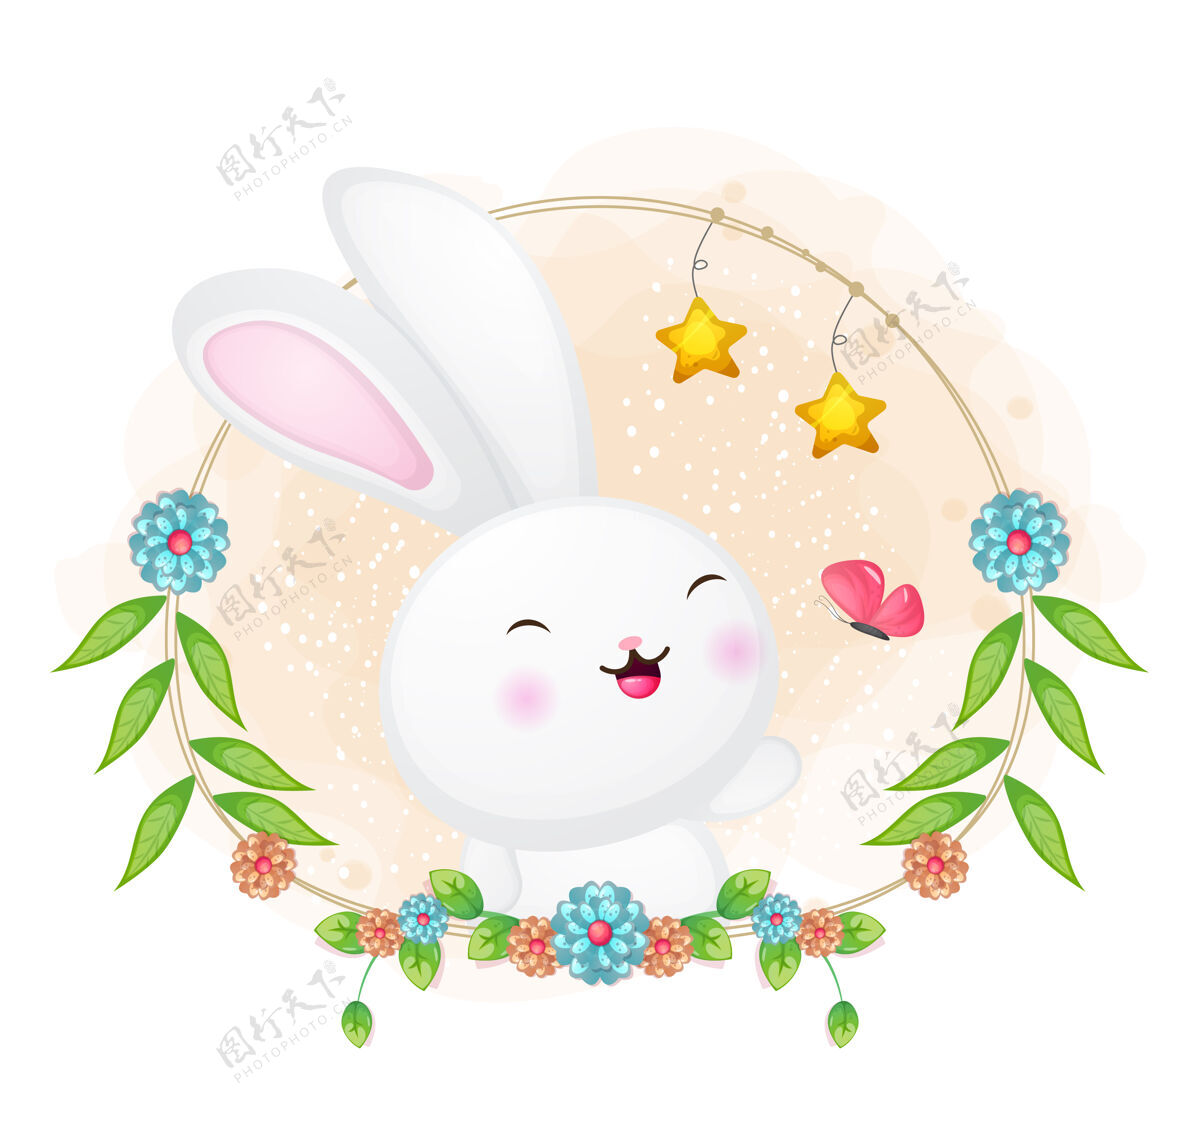 可爱可爱的兔子和蝴蝶玩花卉卡通插画手绘花卉动物